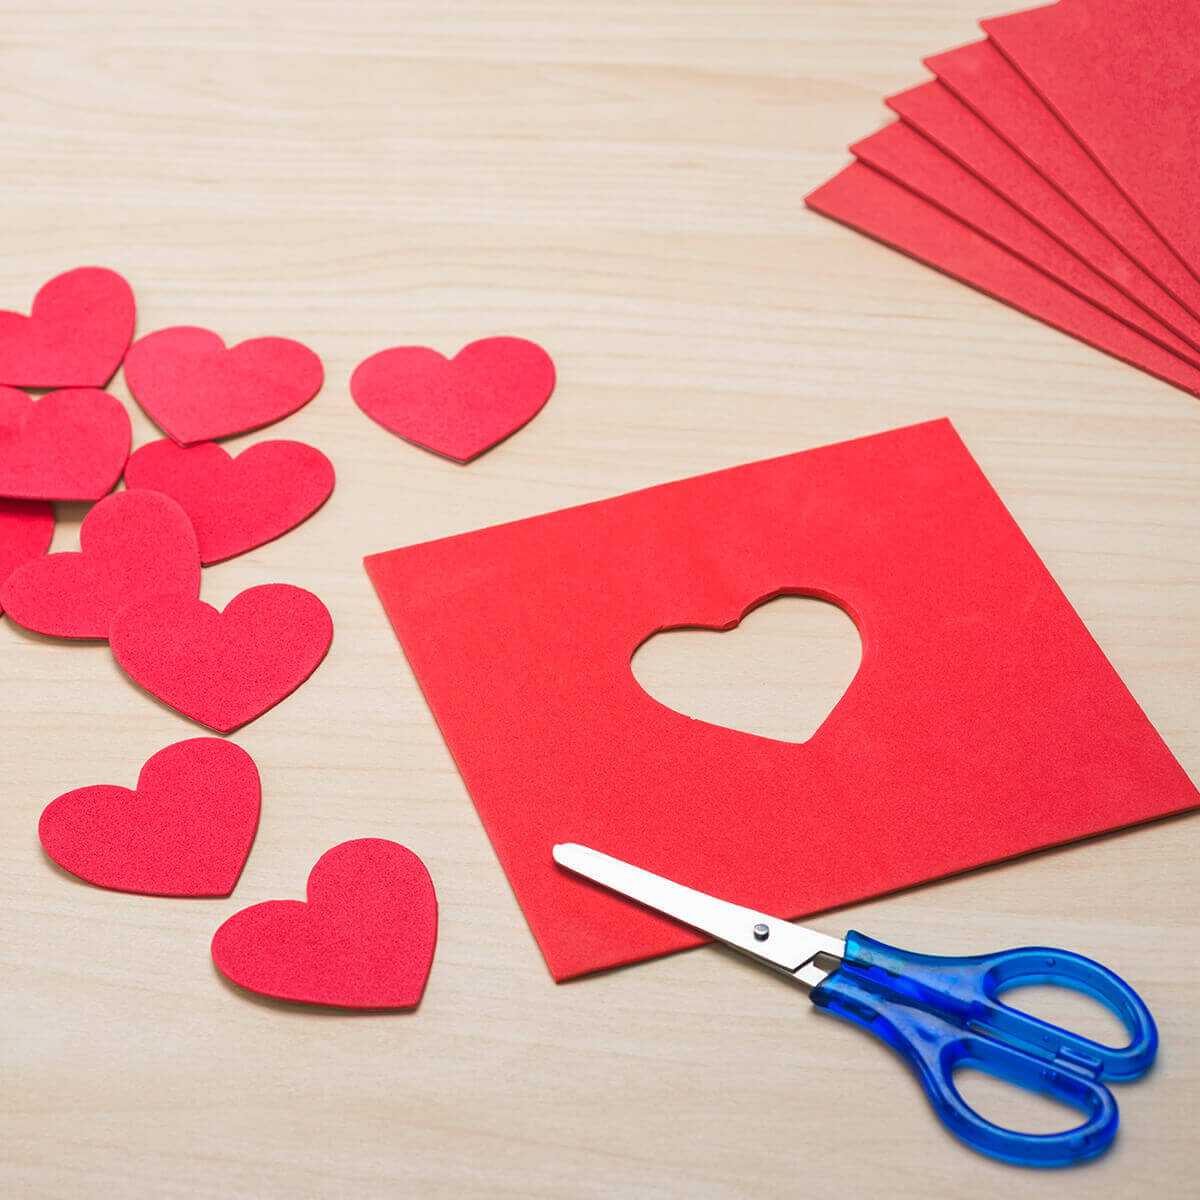 5 Valentine's Day DIY Gift Ideas 